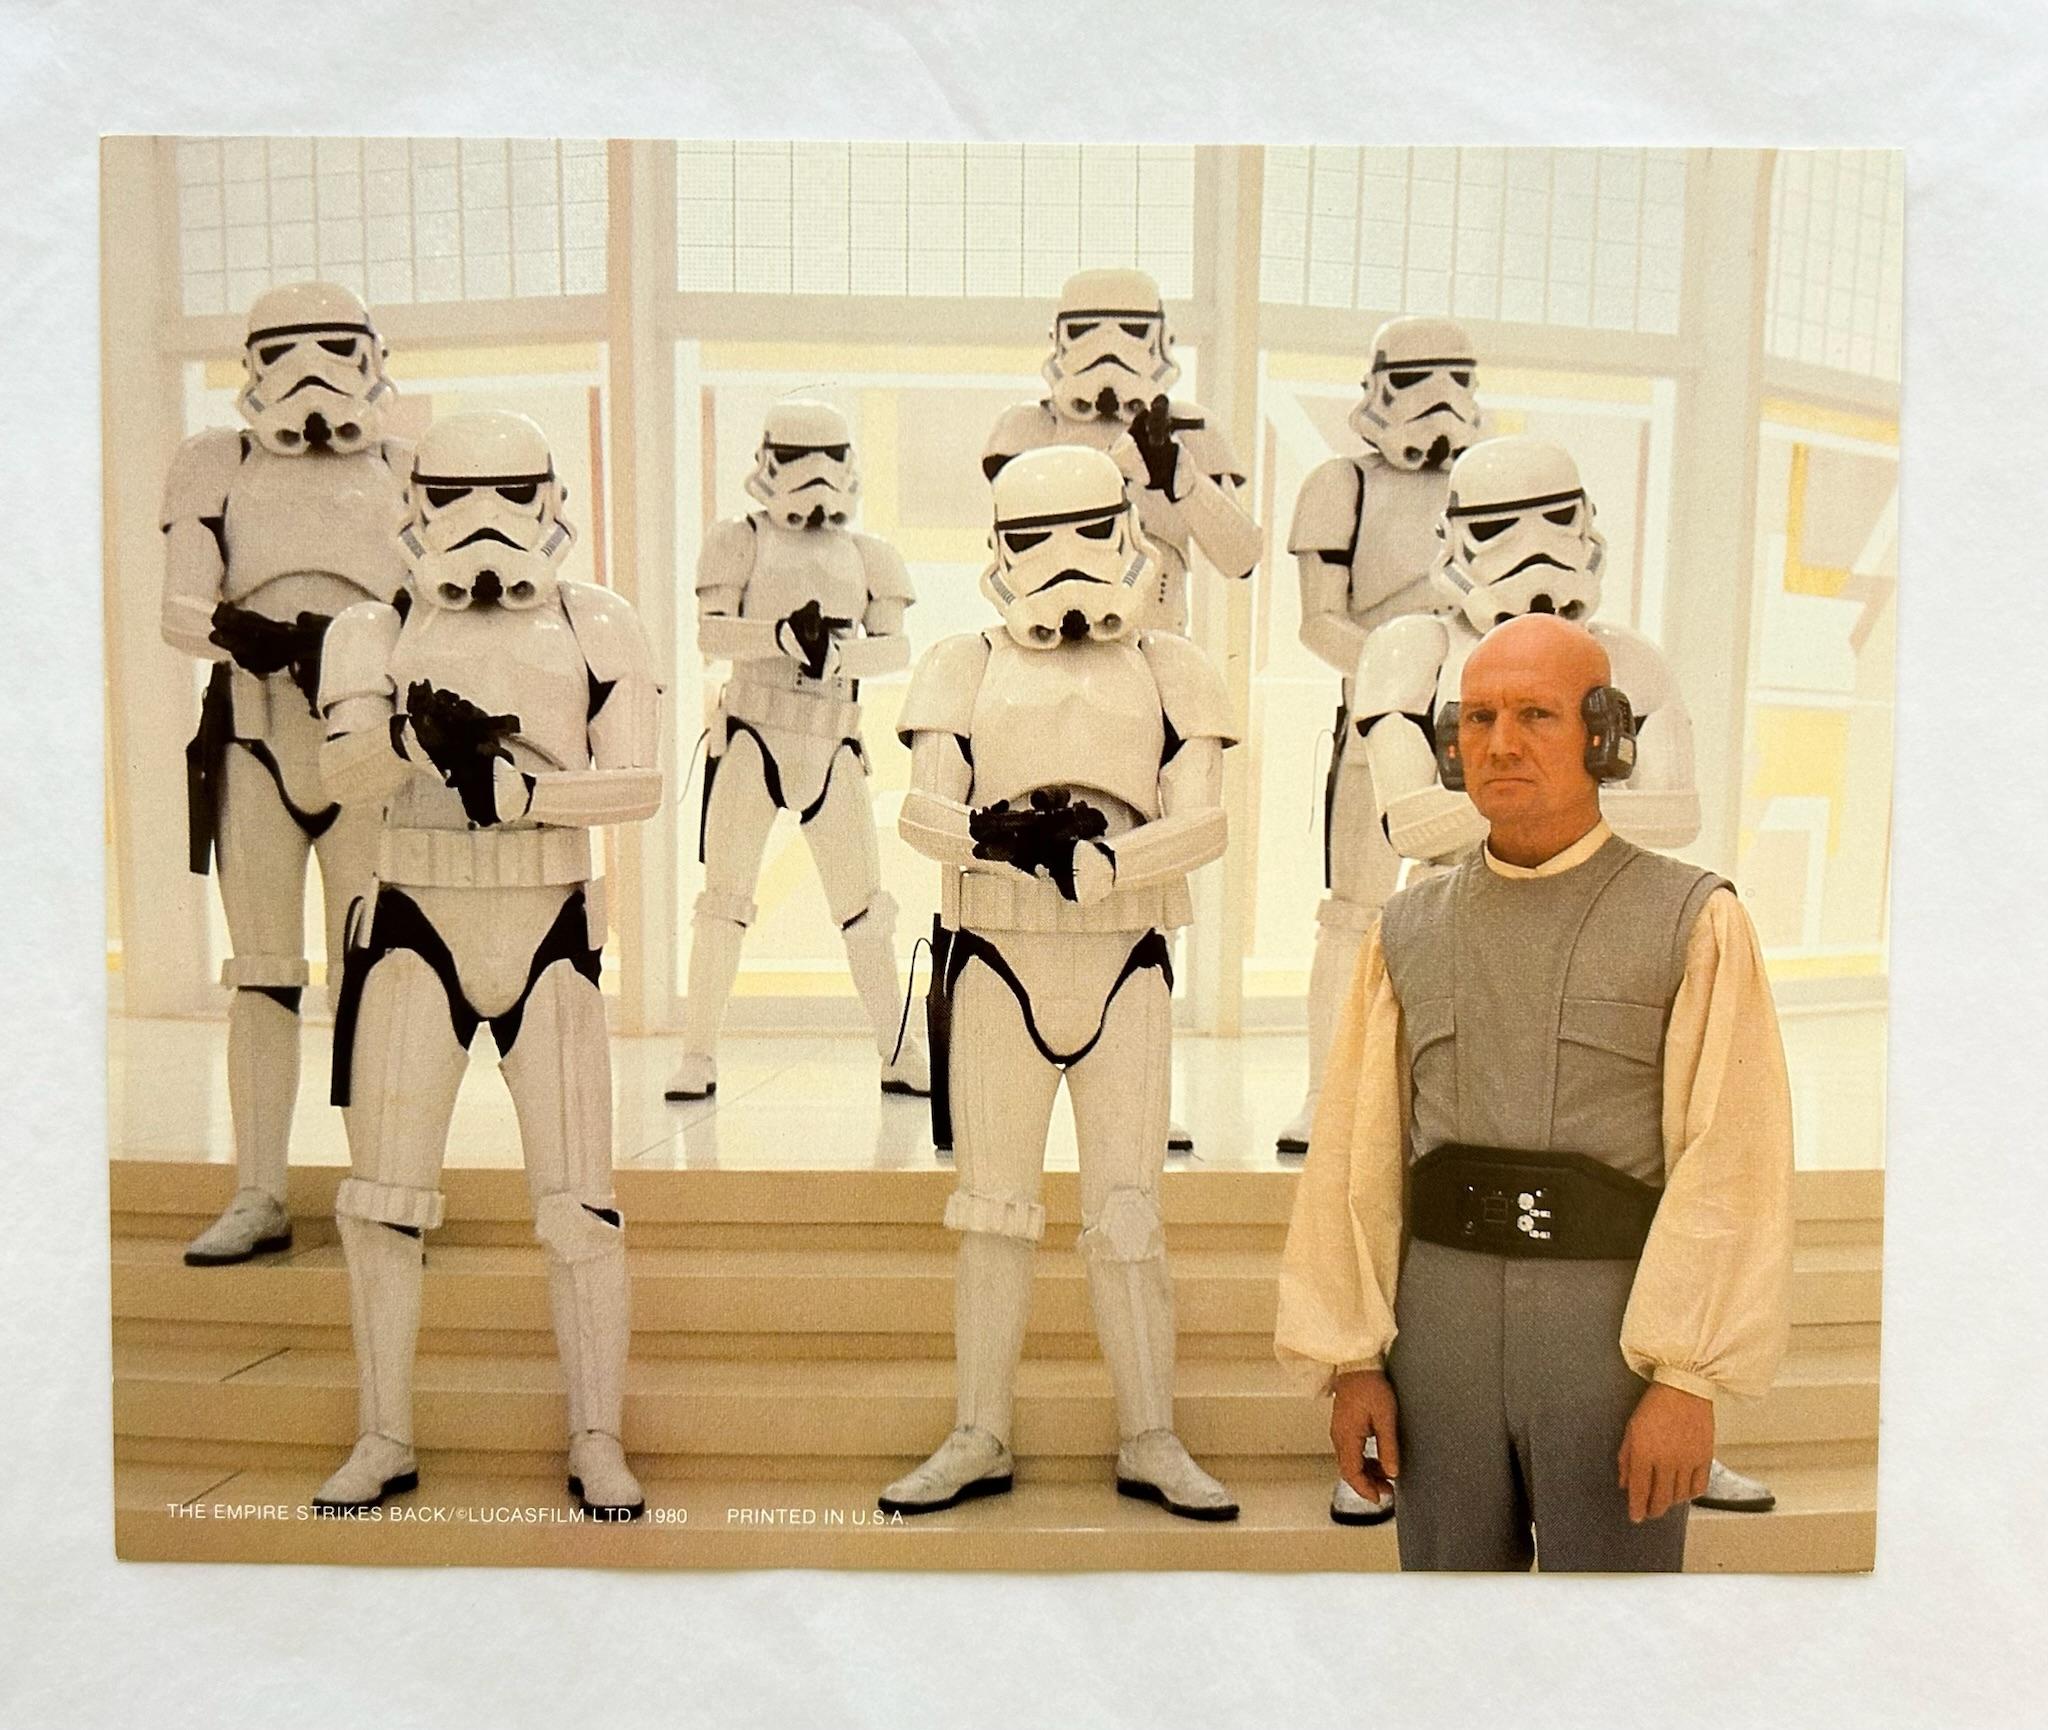 Star Wars Stormtroopers The Empire Strikes Back 1980 Vintage-Filmkartenkarte, Star Wars  – Print von Unknown